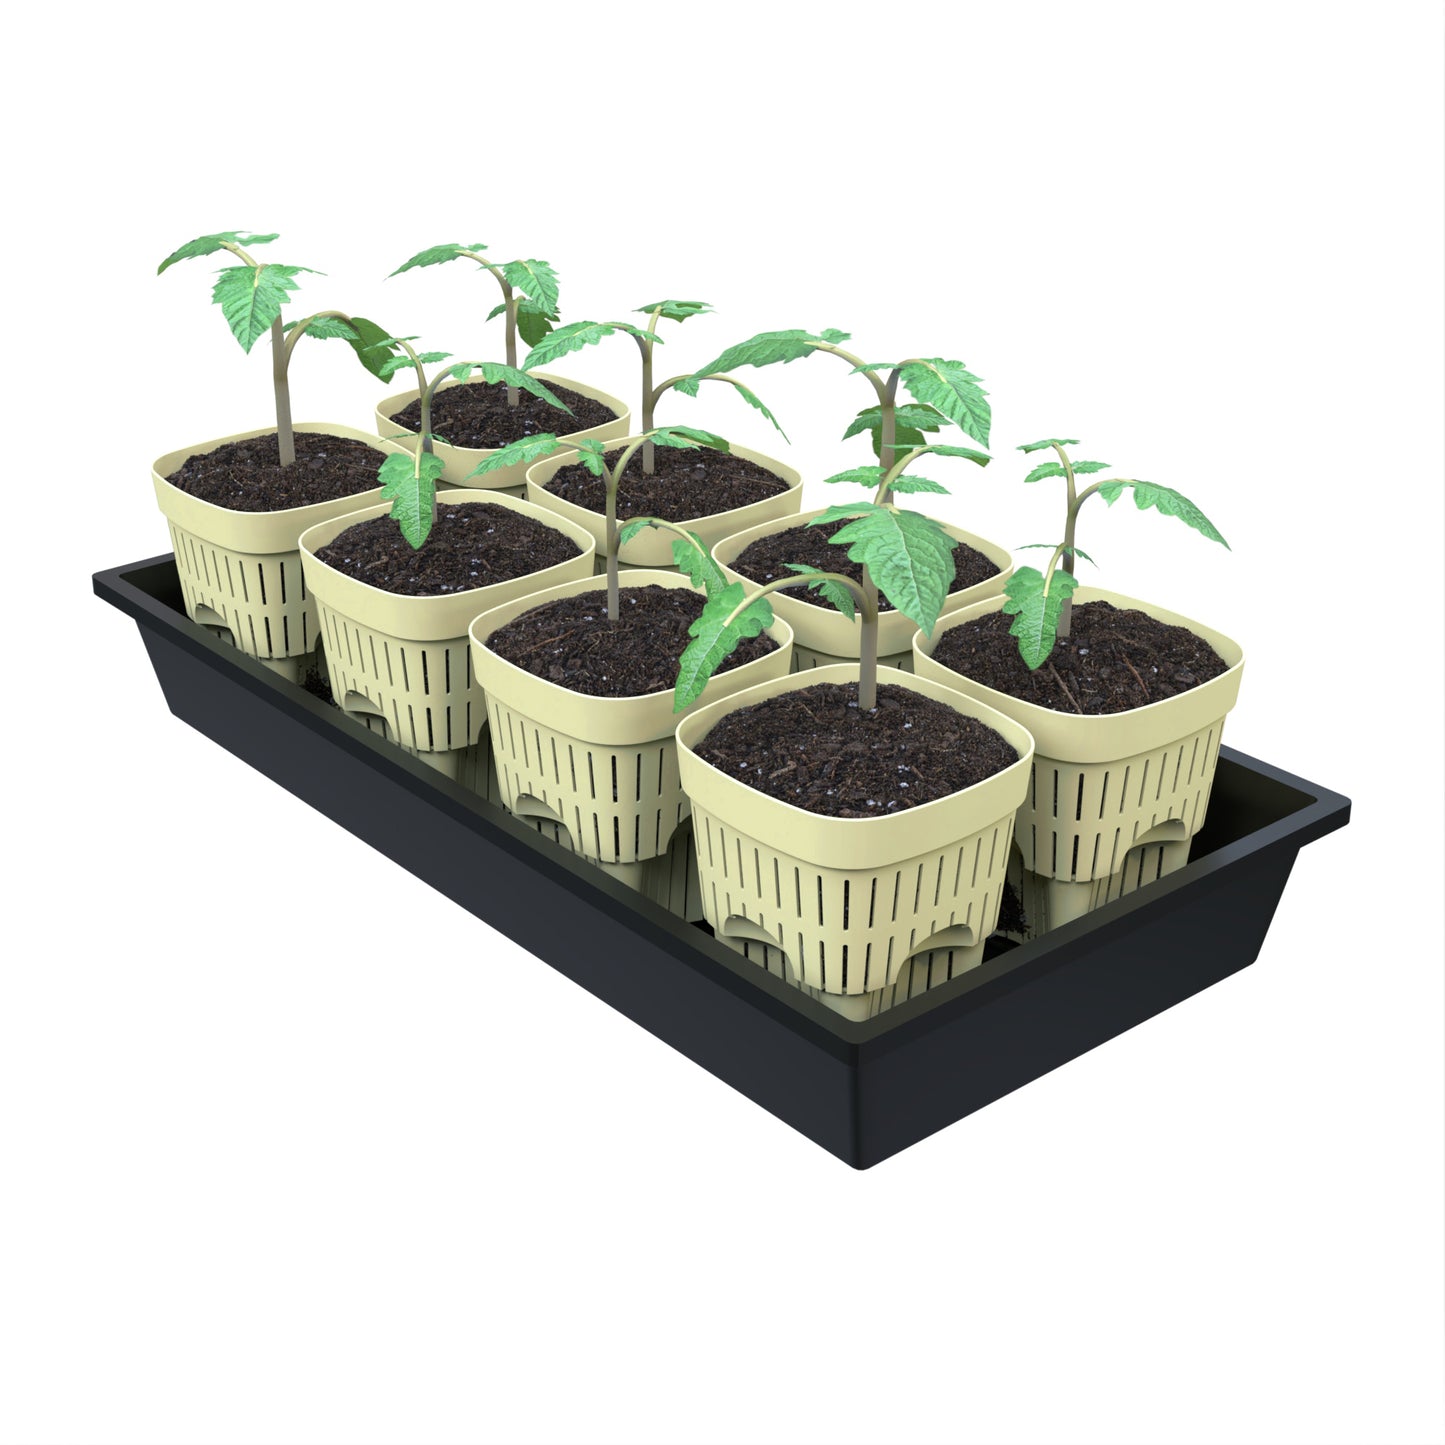 5-Inch Root-Pruning Garden Pots